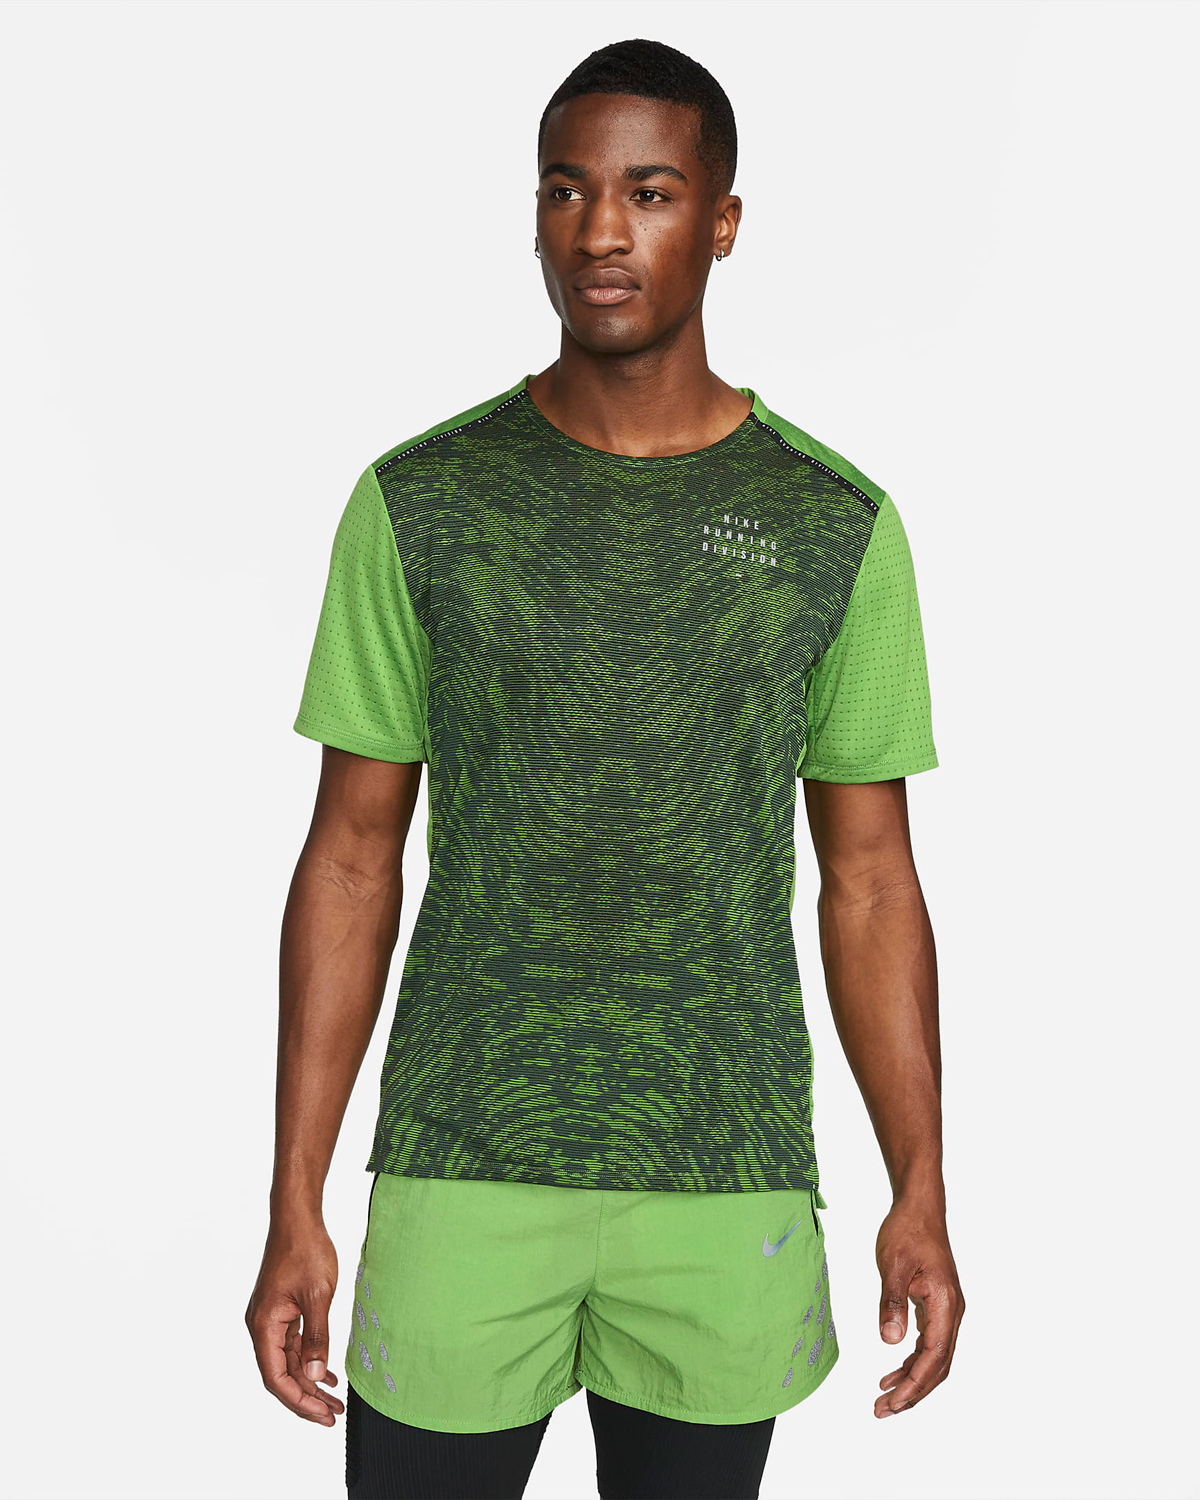 nike-chlorophyll-run-division-shirt